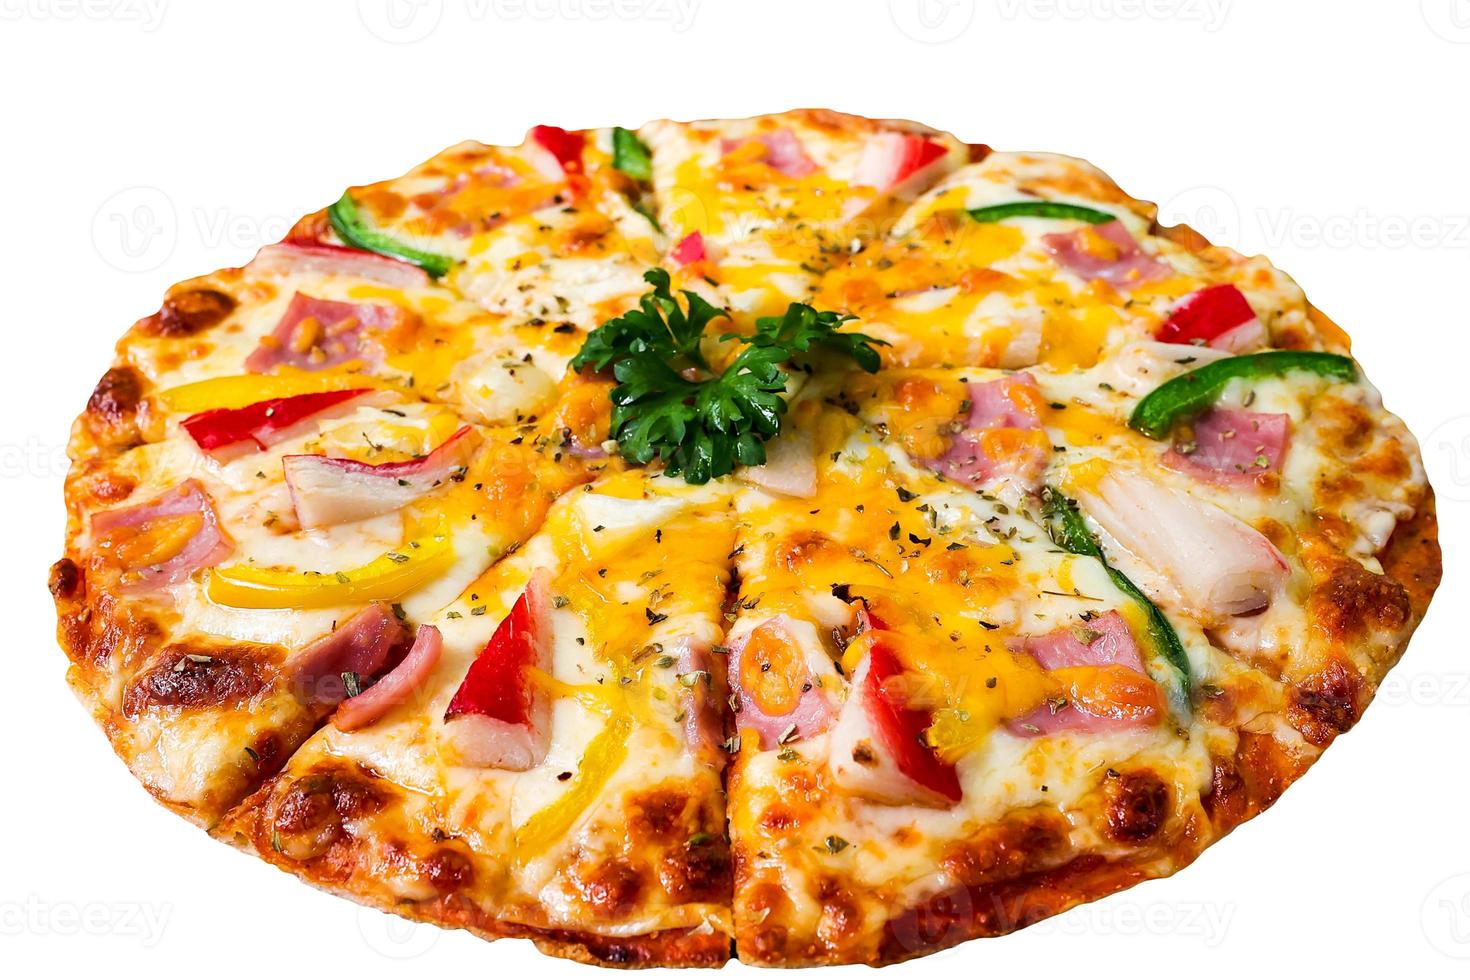 pizza con palitos de cangrejo, jamón y queso, foto de muy alta calidad sobre fondo blanco.